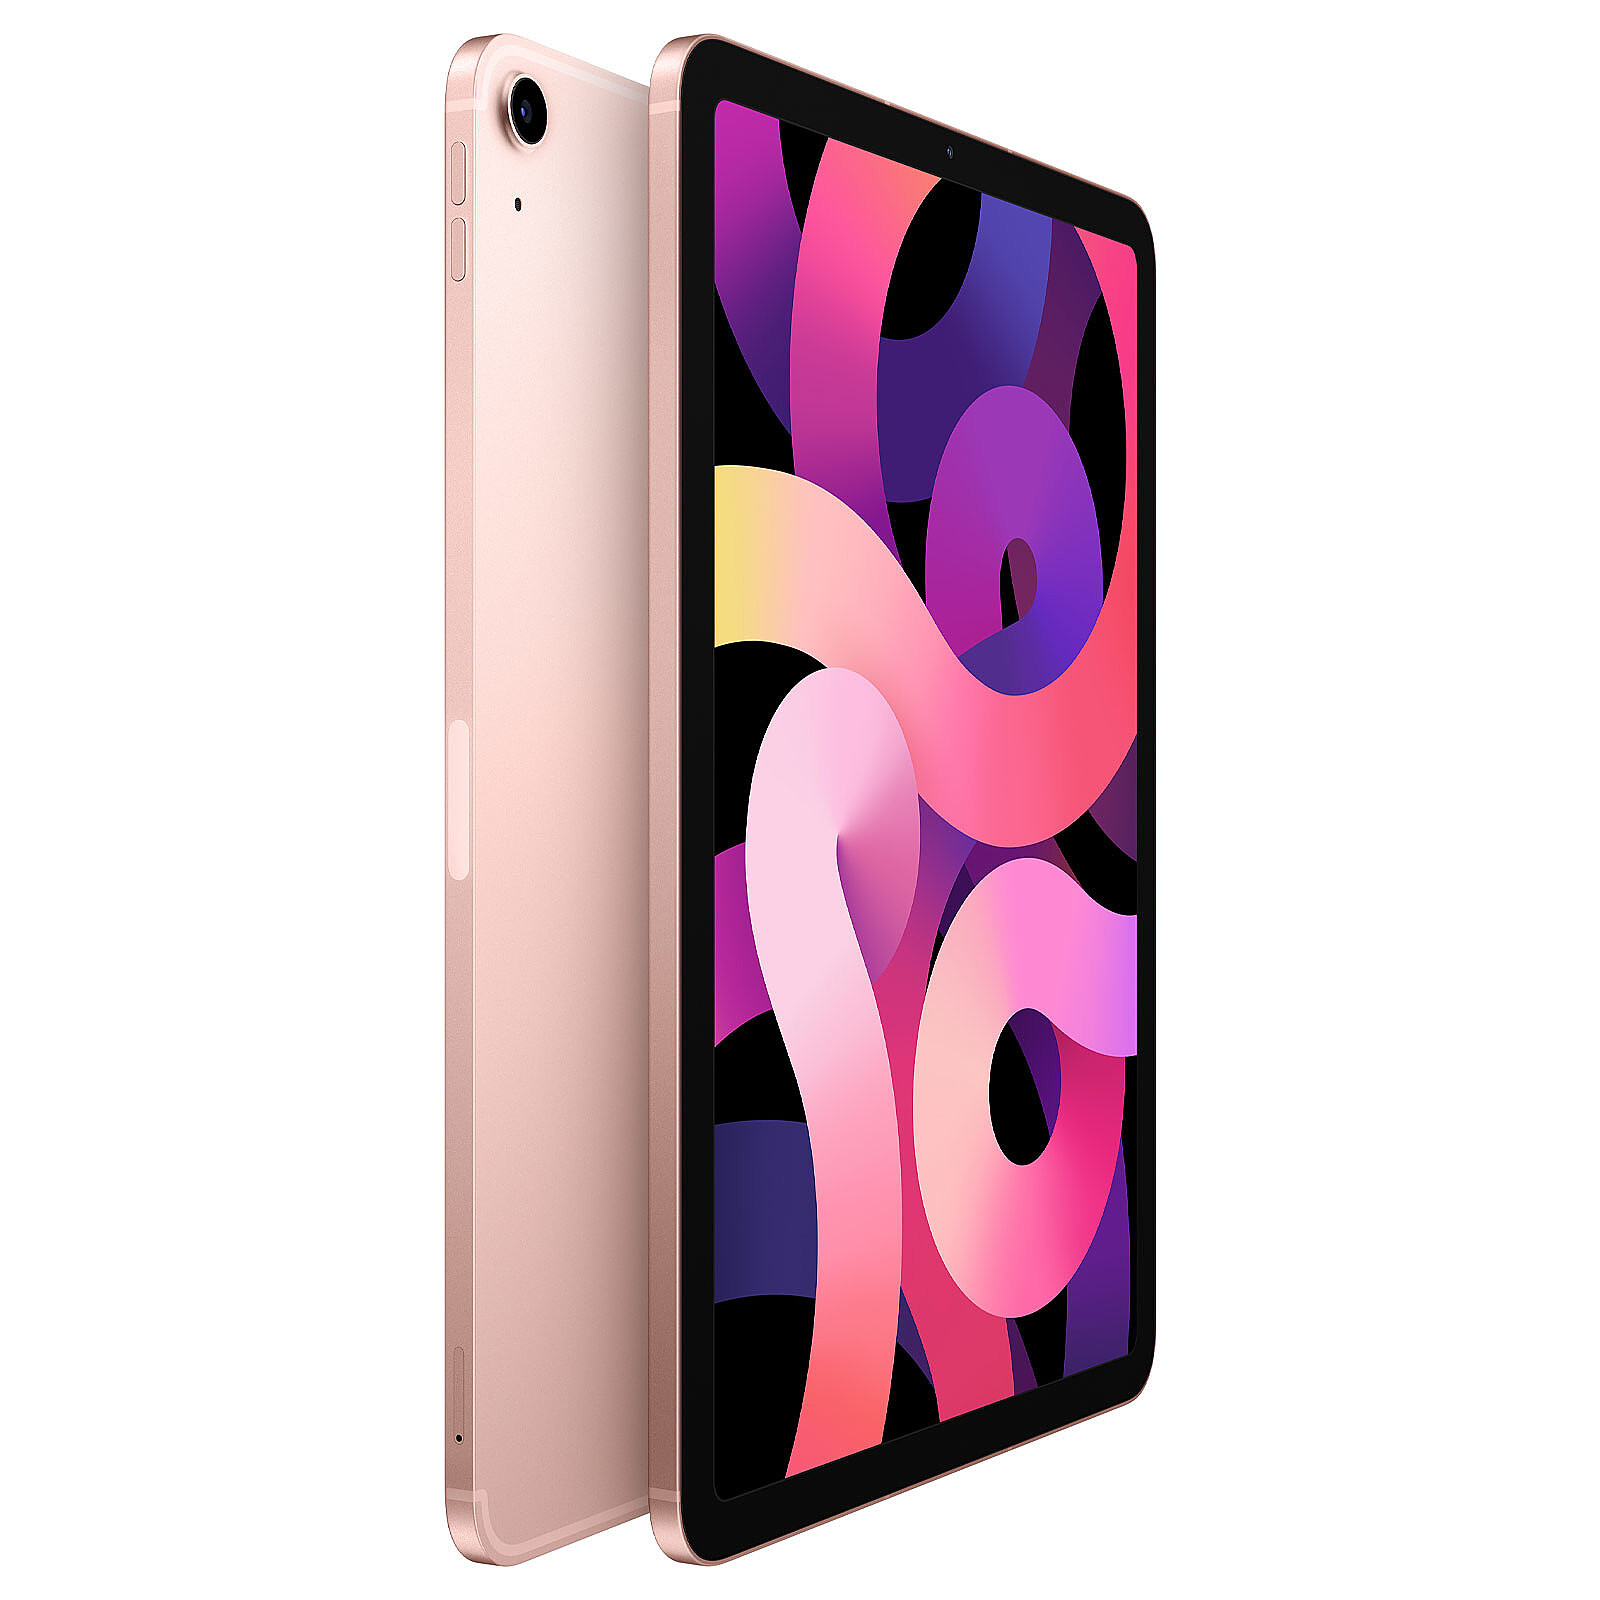 Promo : l'iPad Air 256 Go cellulaire à 770 € (-190 €)